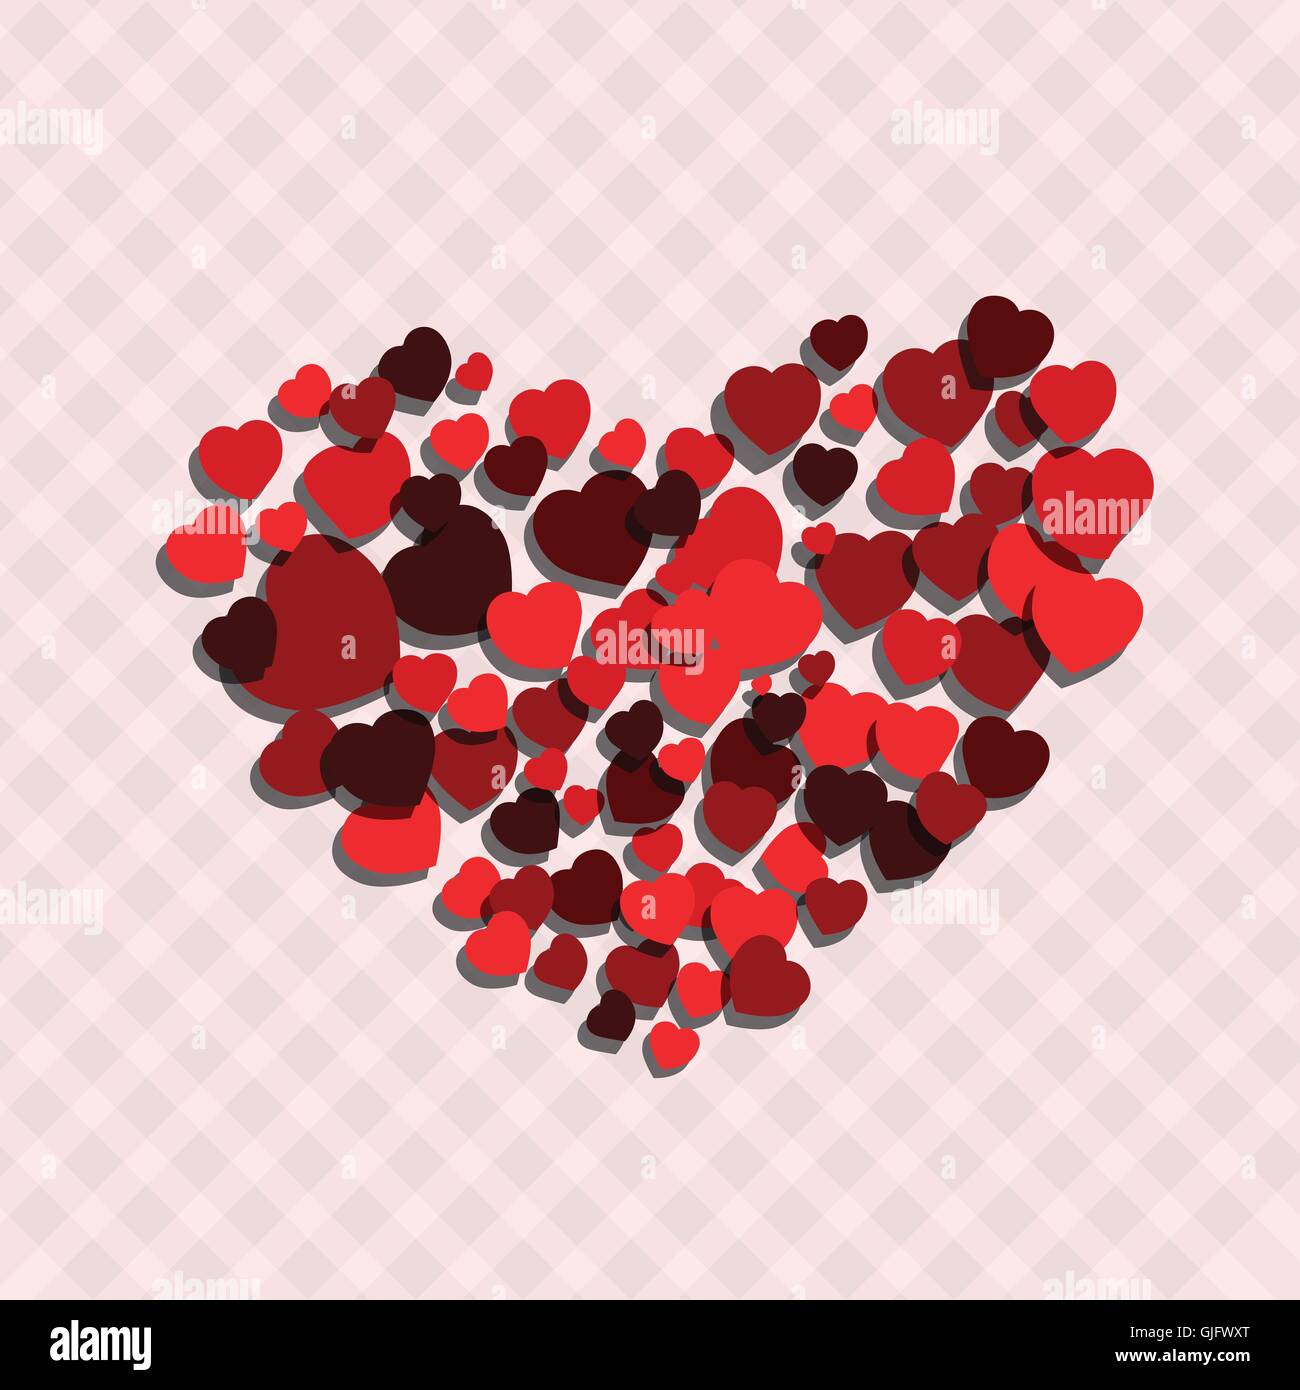 kleine rote Herzen erstellen großes Herz als Liebe Symbol abstrakte Liebe Konzept Vektorgrafik Stock Vektor